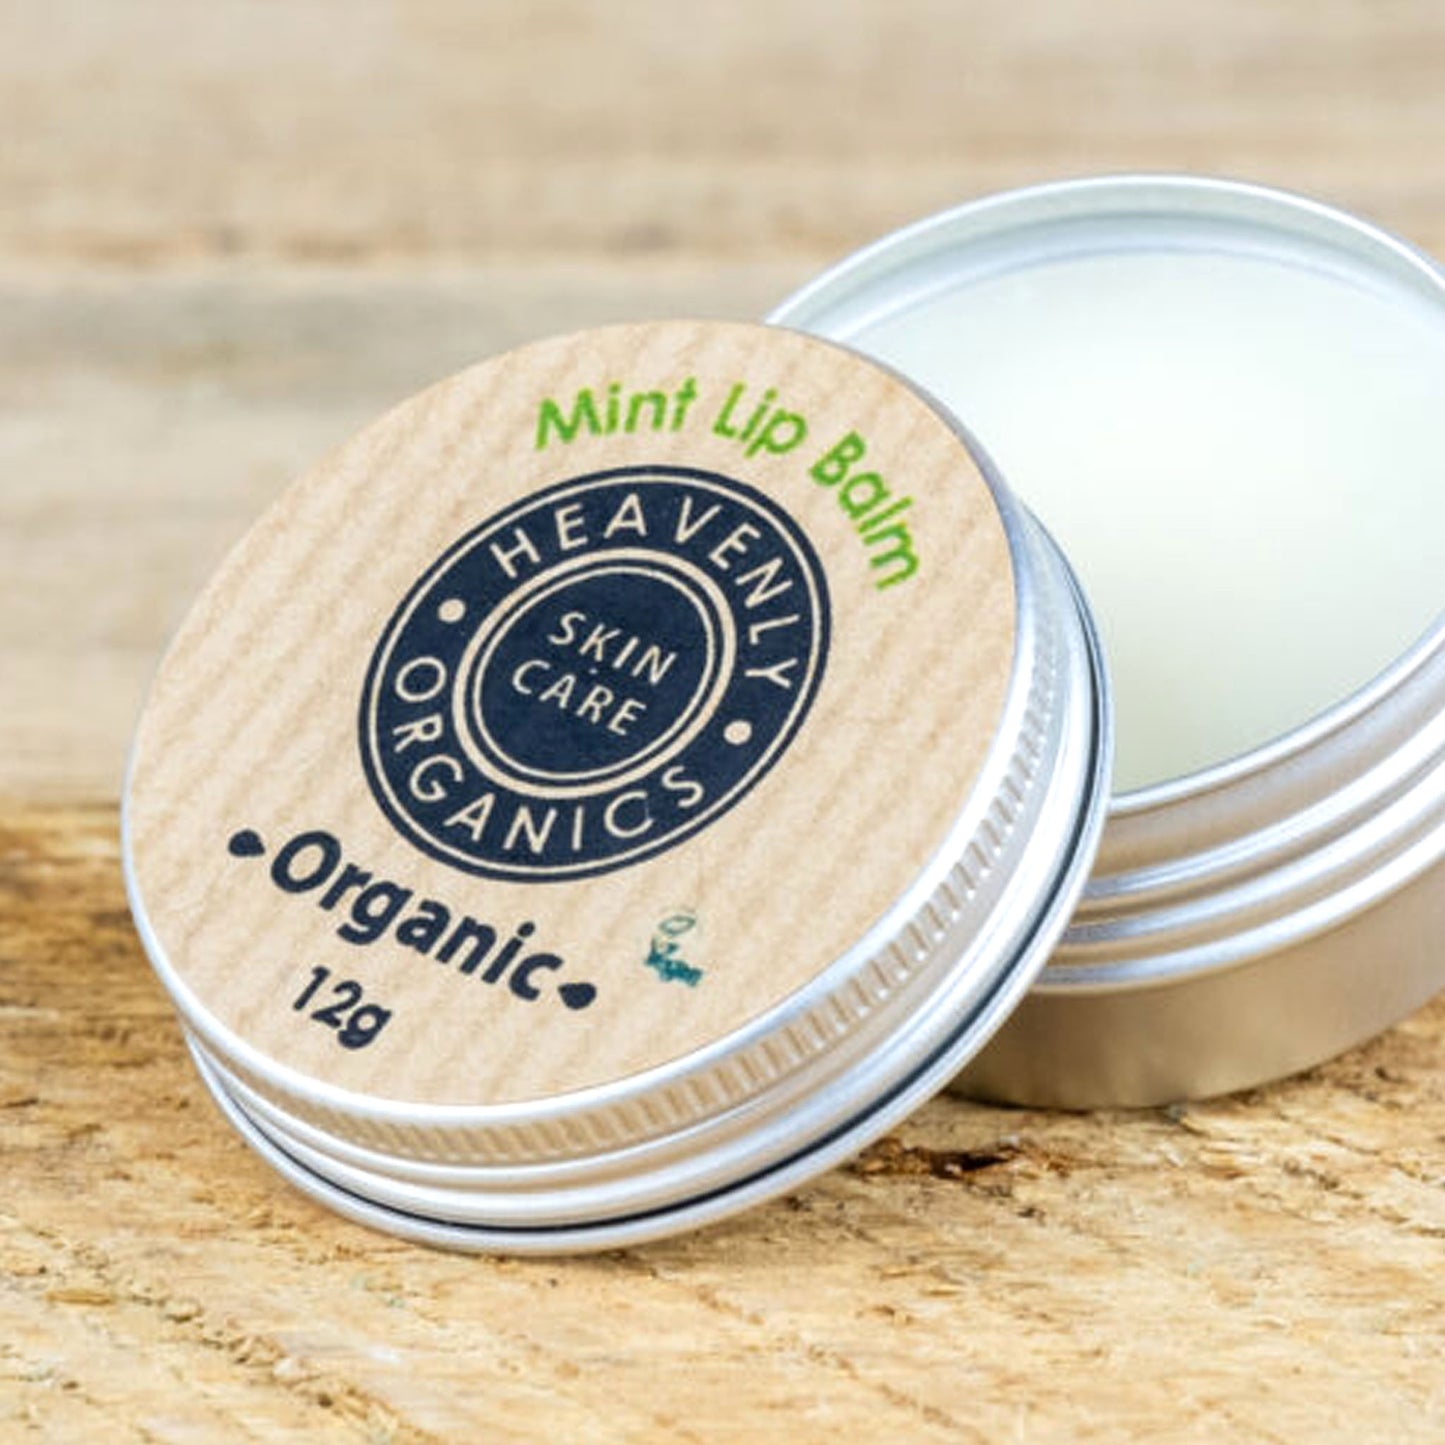 Heavenly Organics mint lip balm